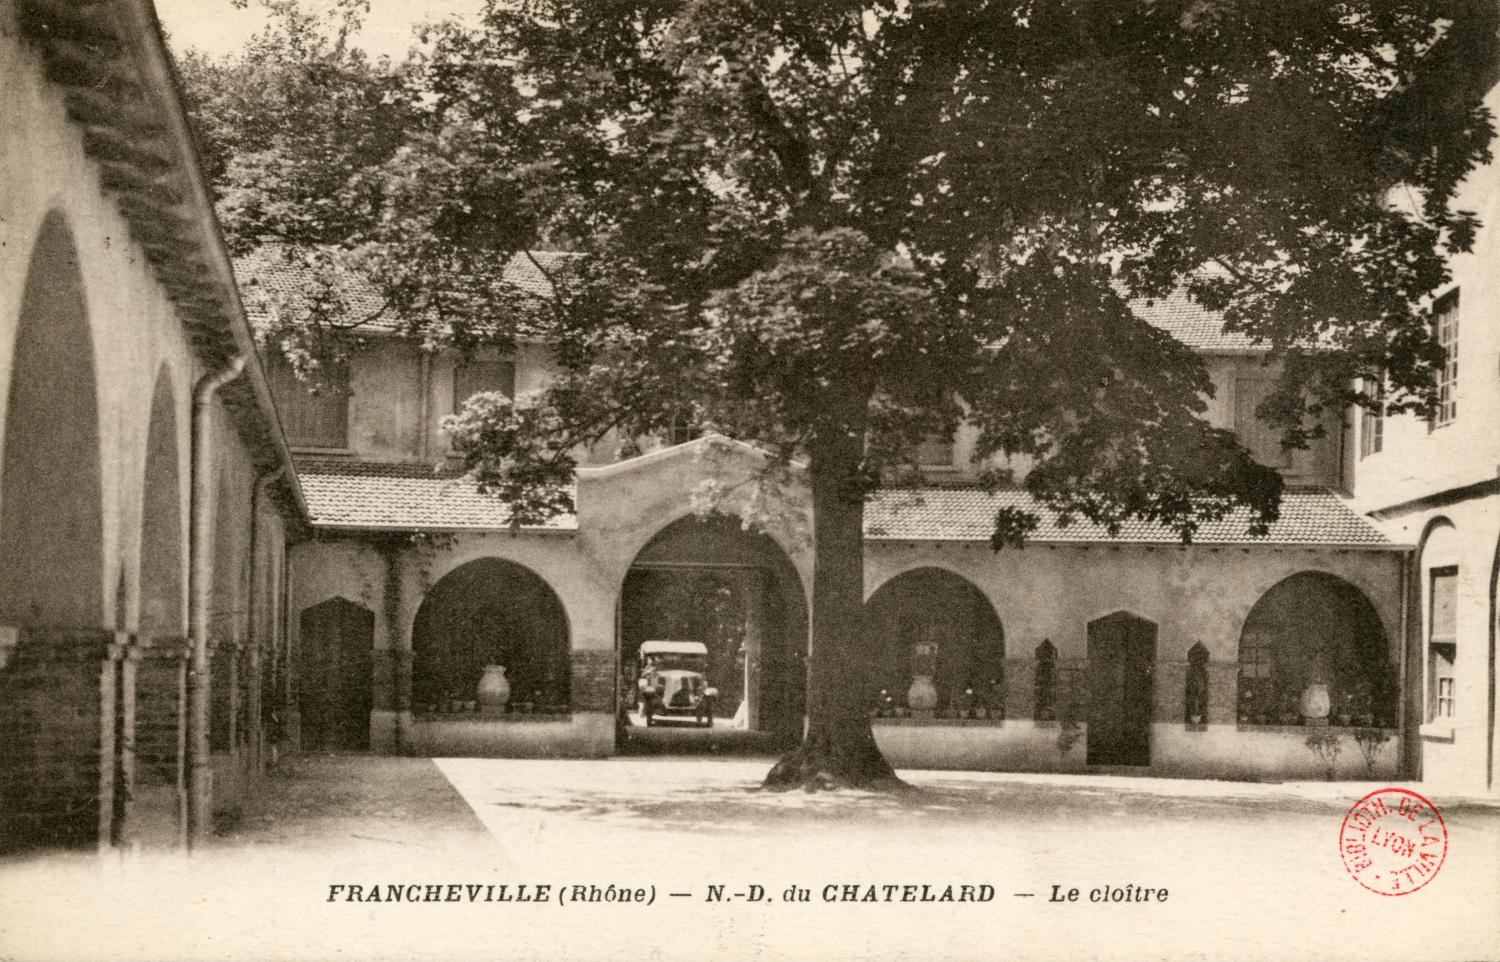 Francheville (Rhône). - N.-D. du Chatelard. - Le cloître